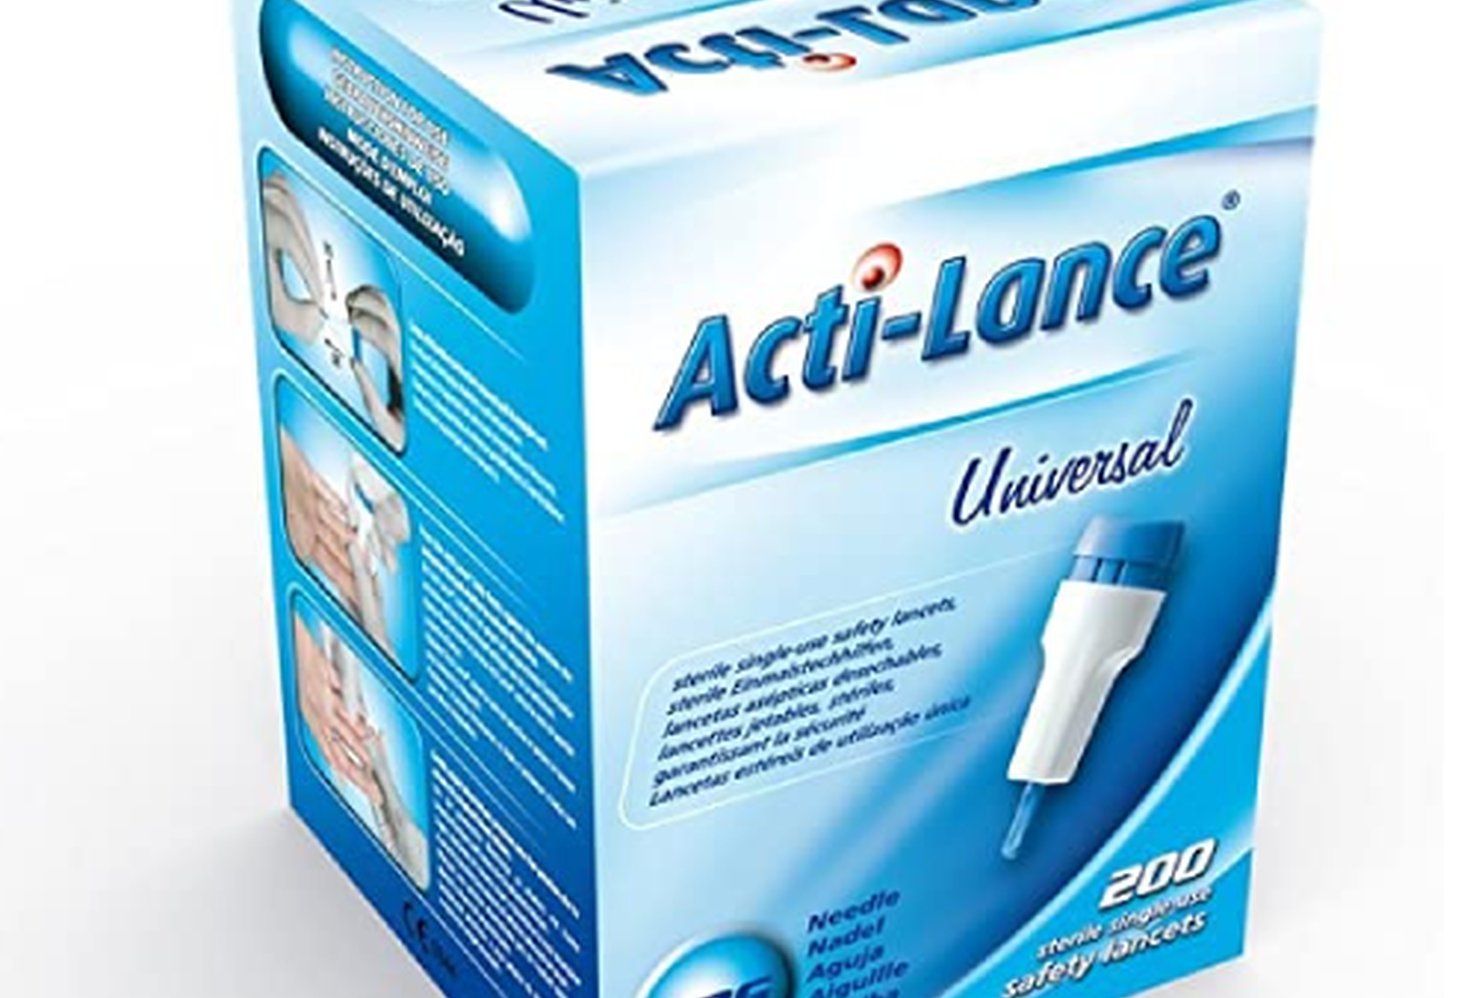 ActiLance Lancets Universal - BLUE 200